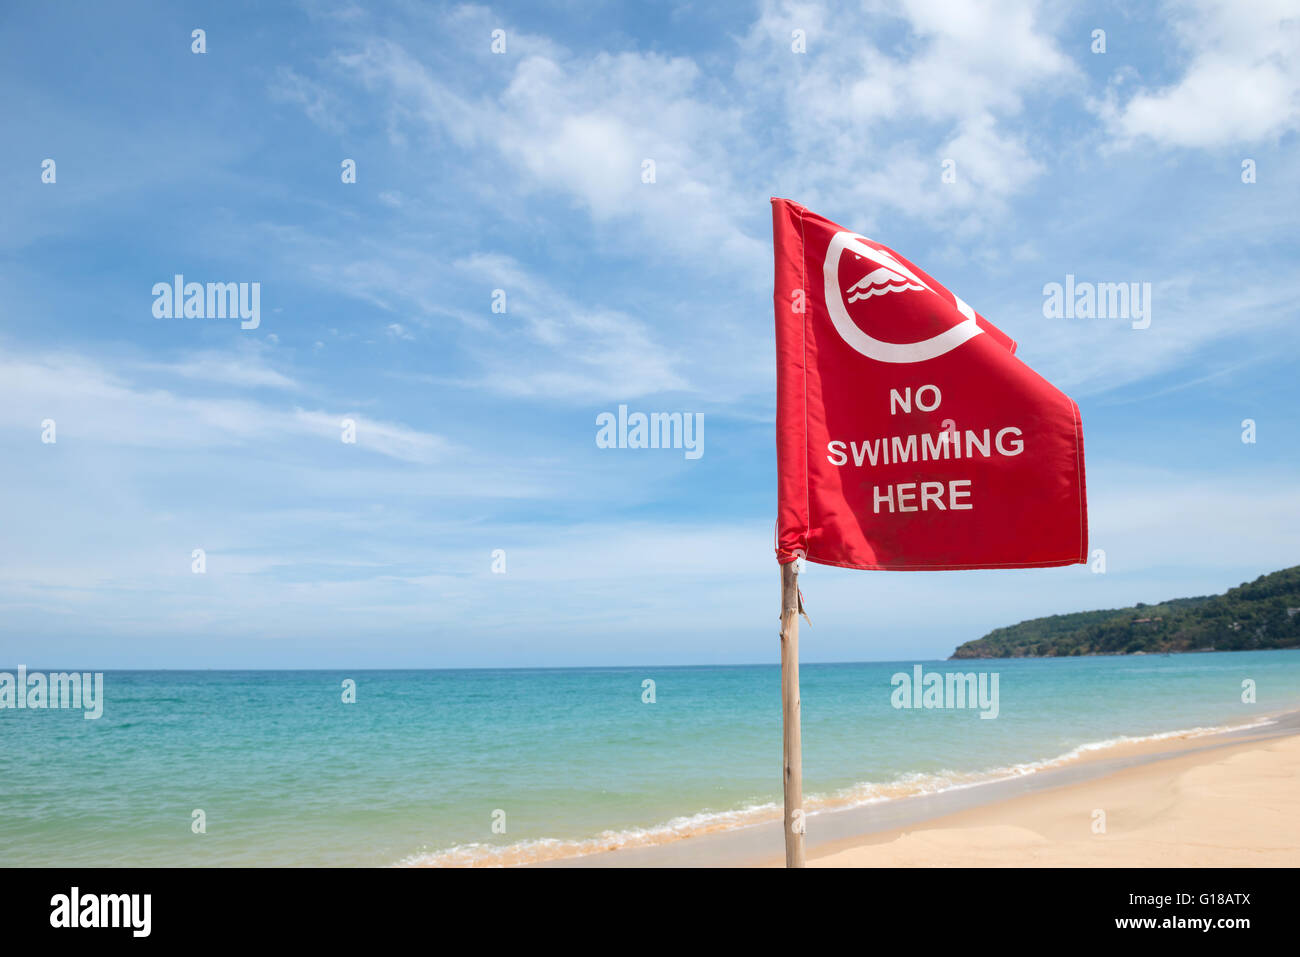 No hay señal de peligro de nadar en la playa. Foto de stock